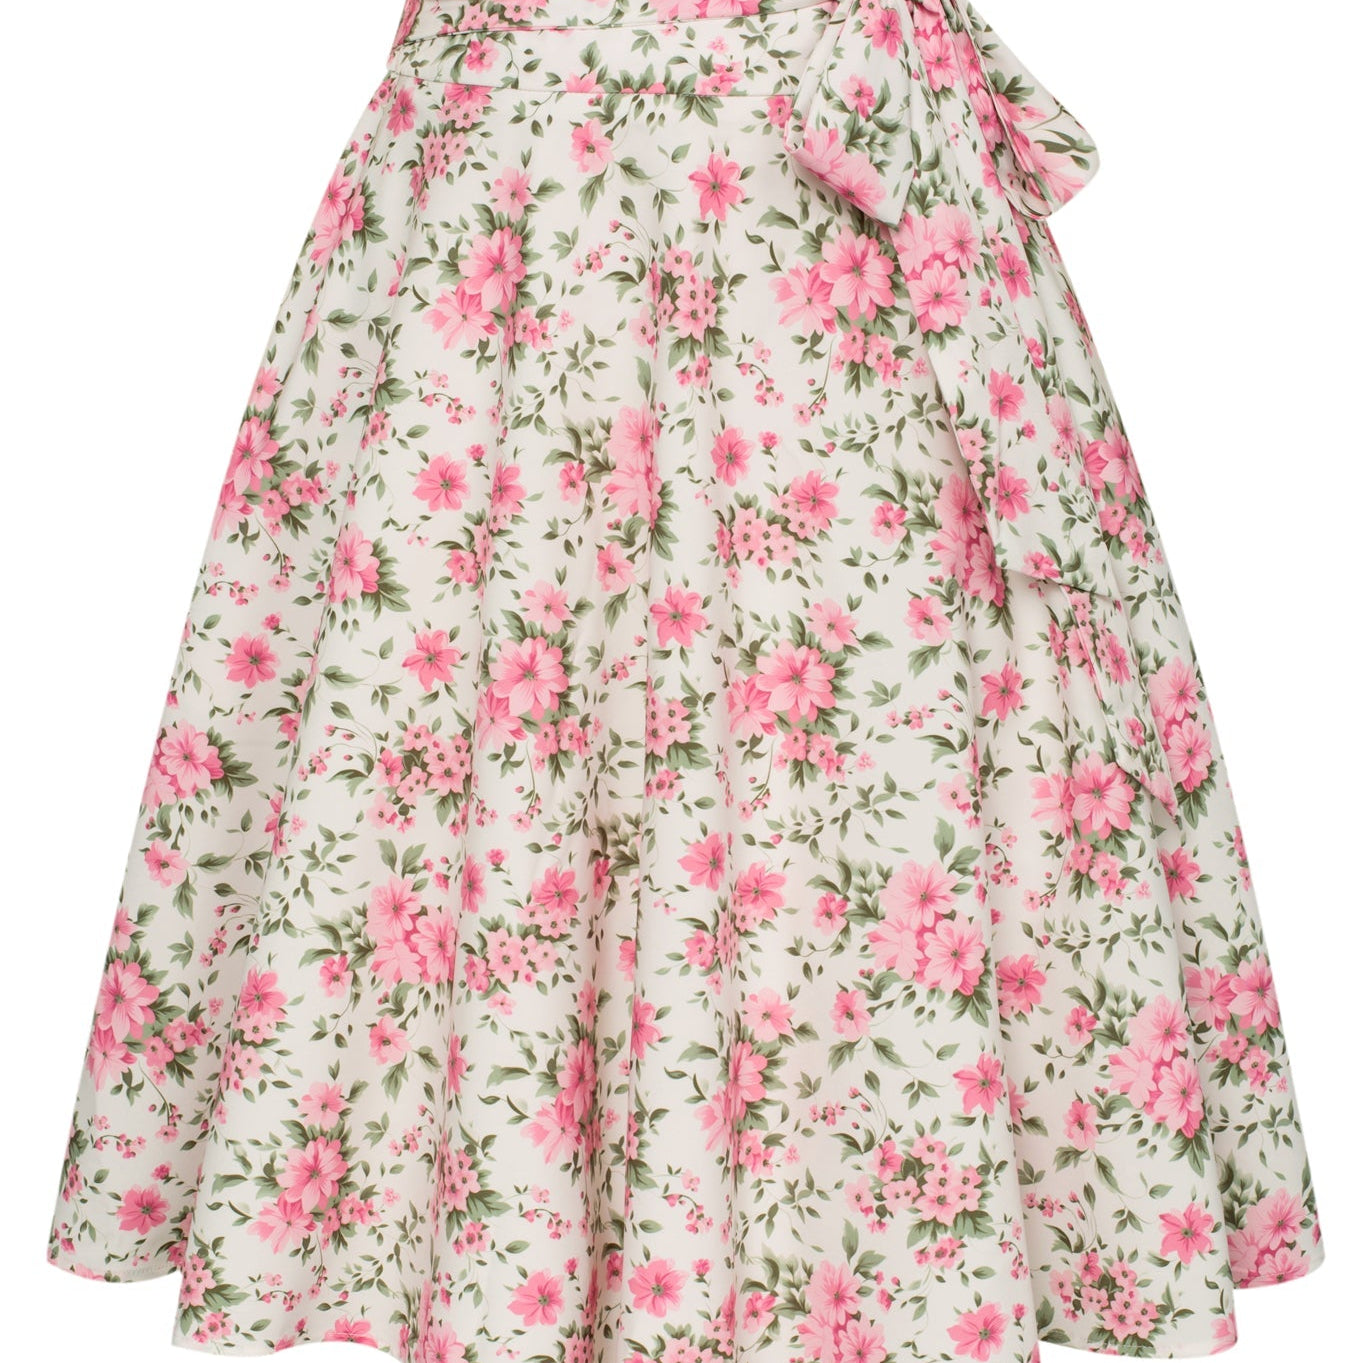 Floral Patterns Vintage High Waist A-Line Pockets Skirt Skater Flared Midi Skirts